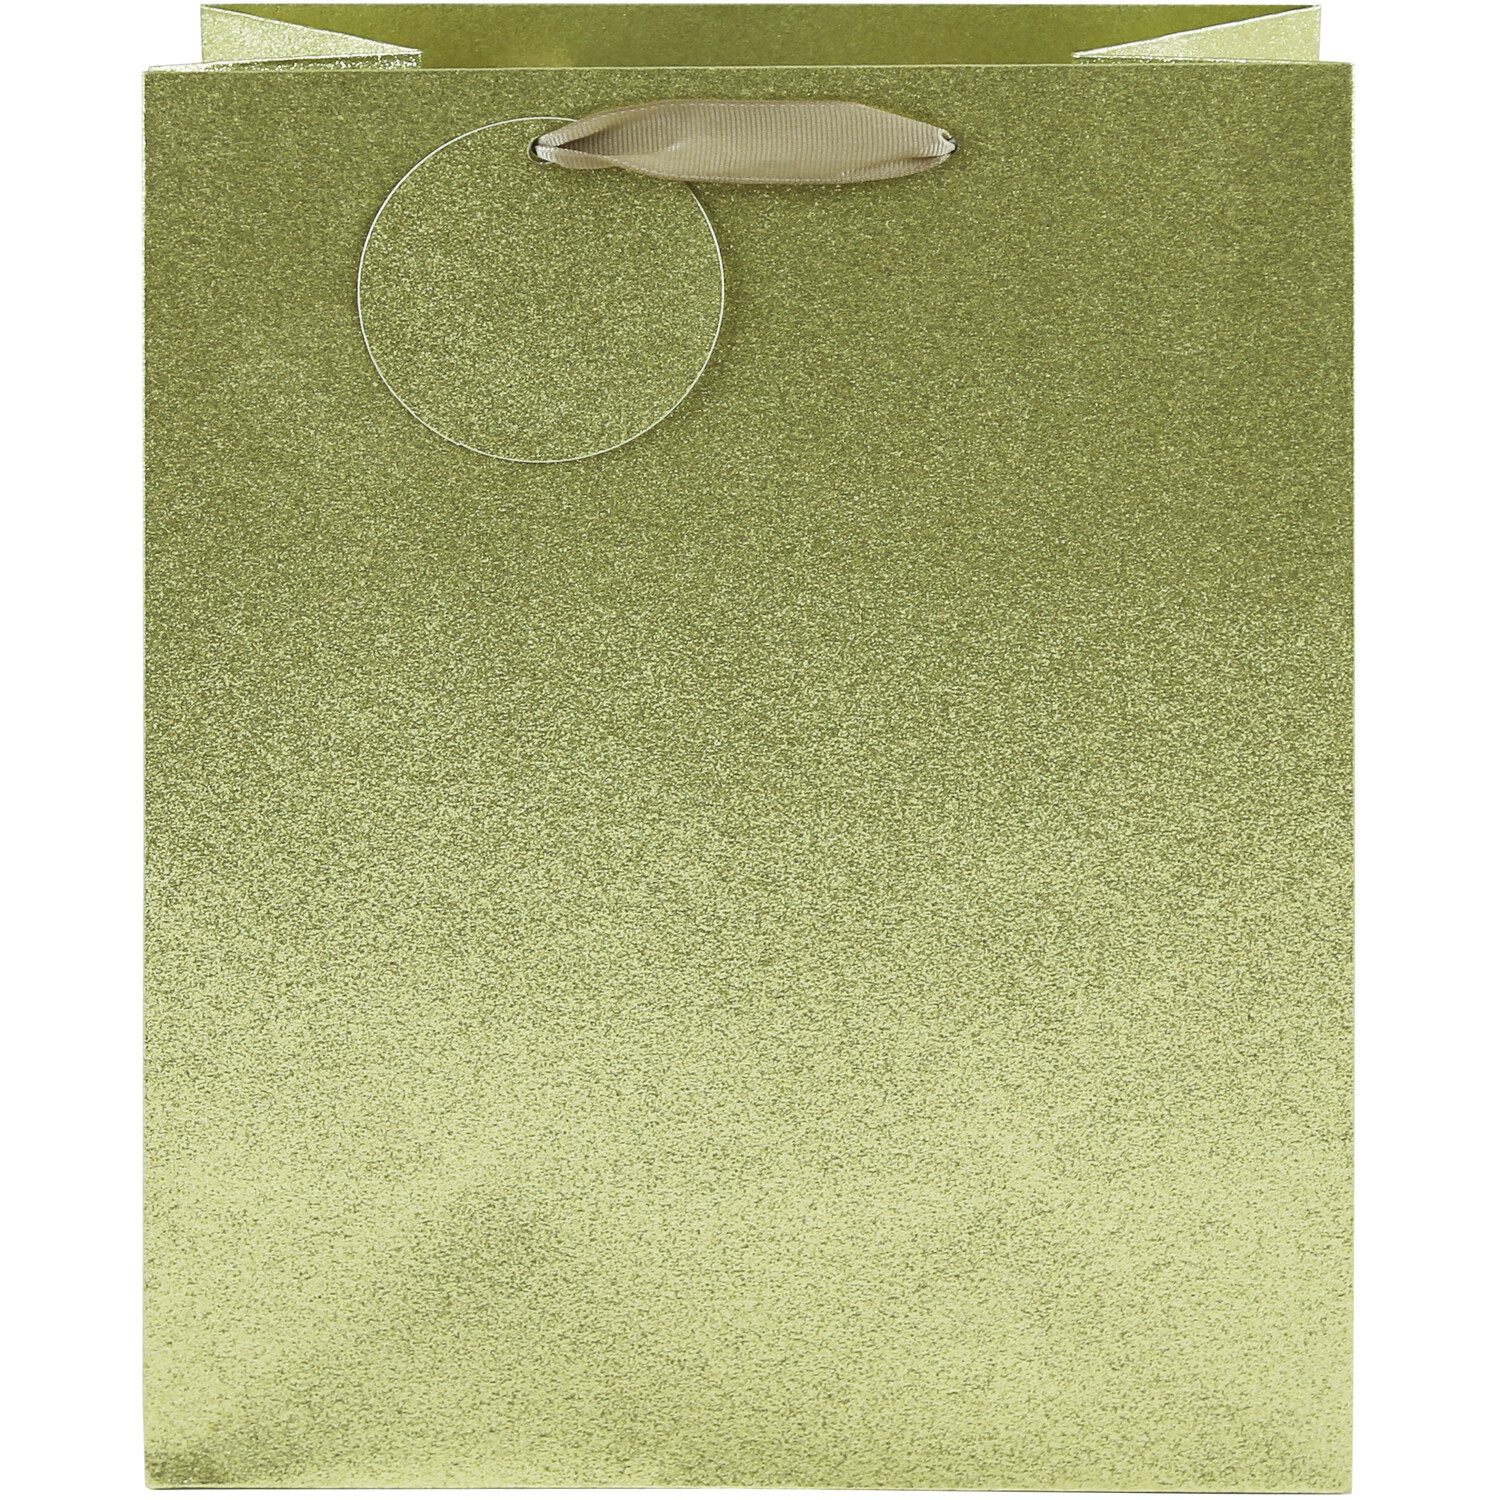 Shimmer Gift Bag - Gold / Large Image 2